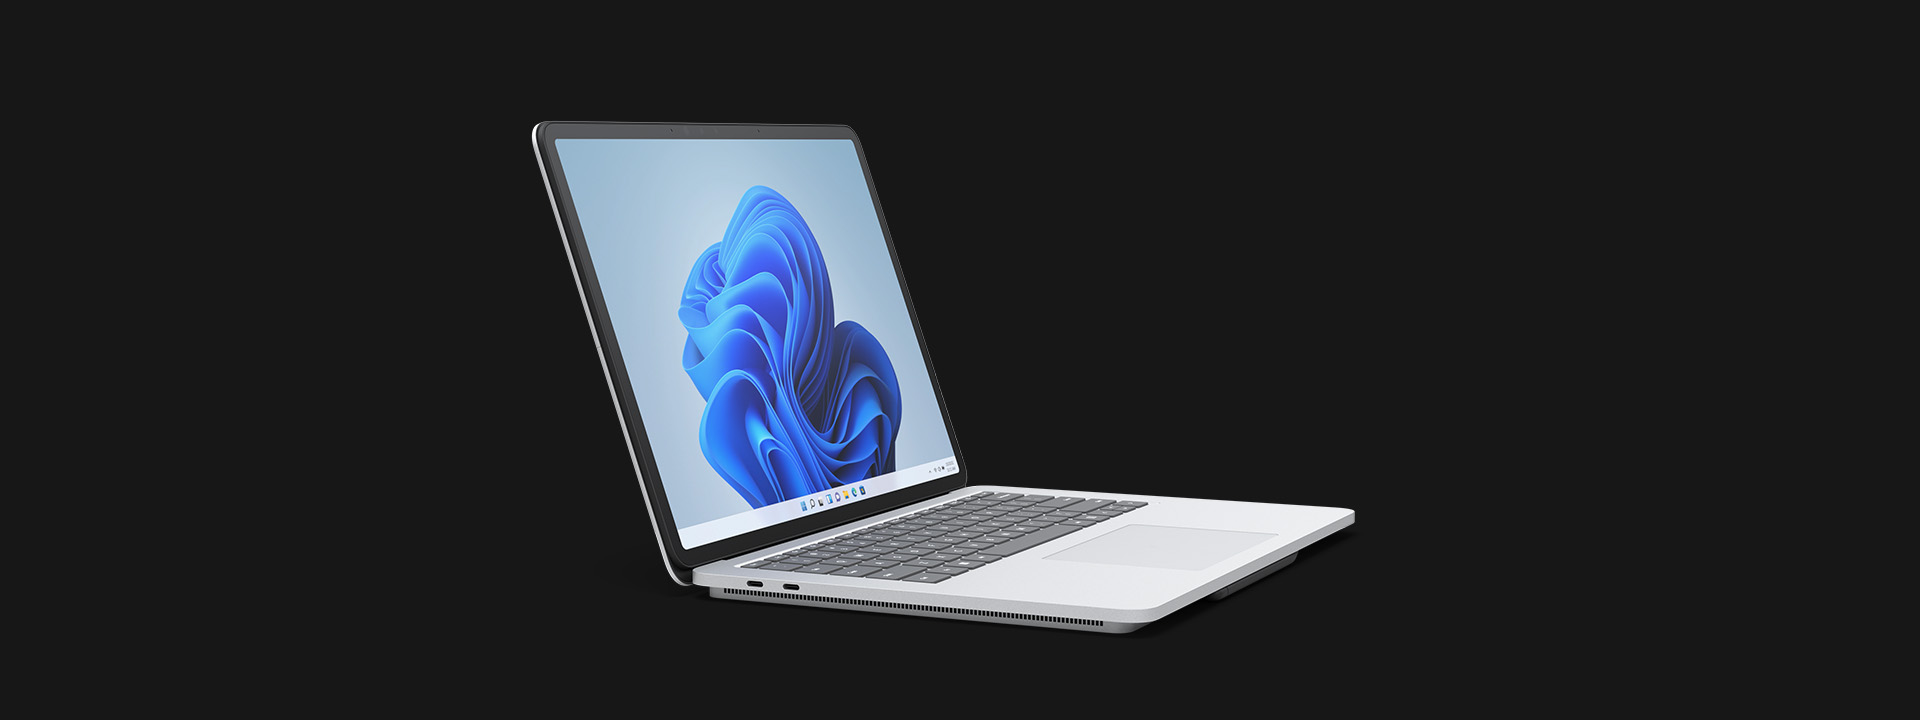 Surface Laptop Studio in laptop mode.